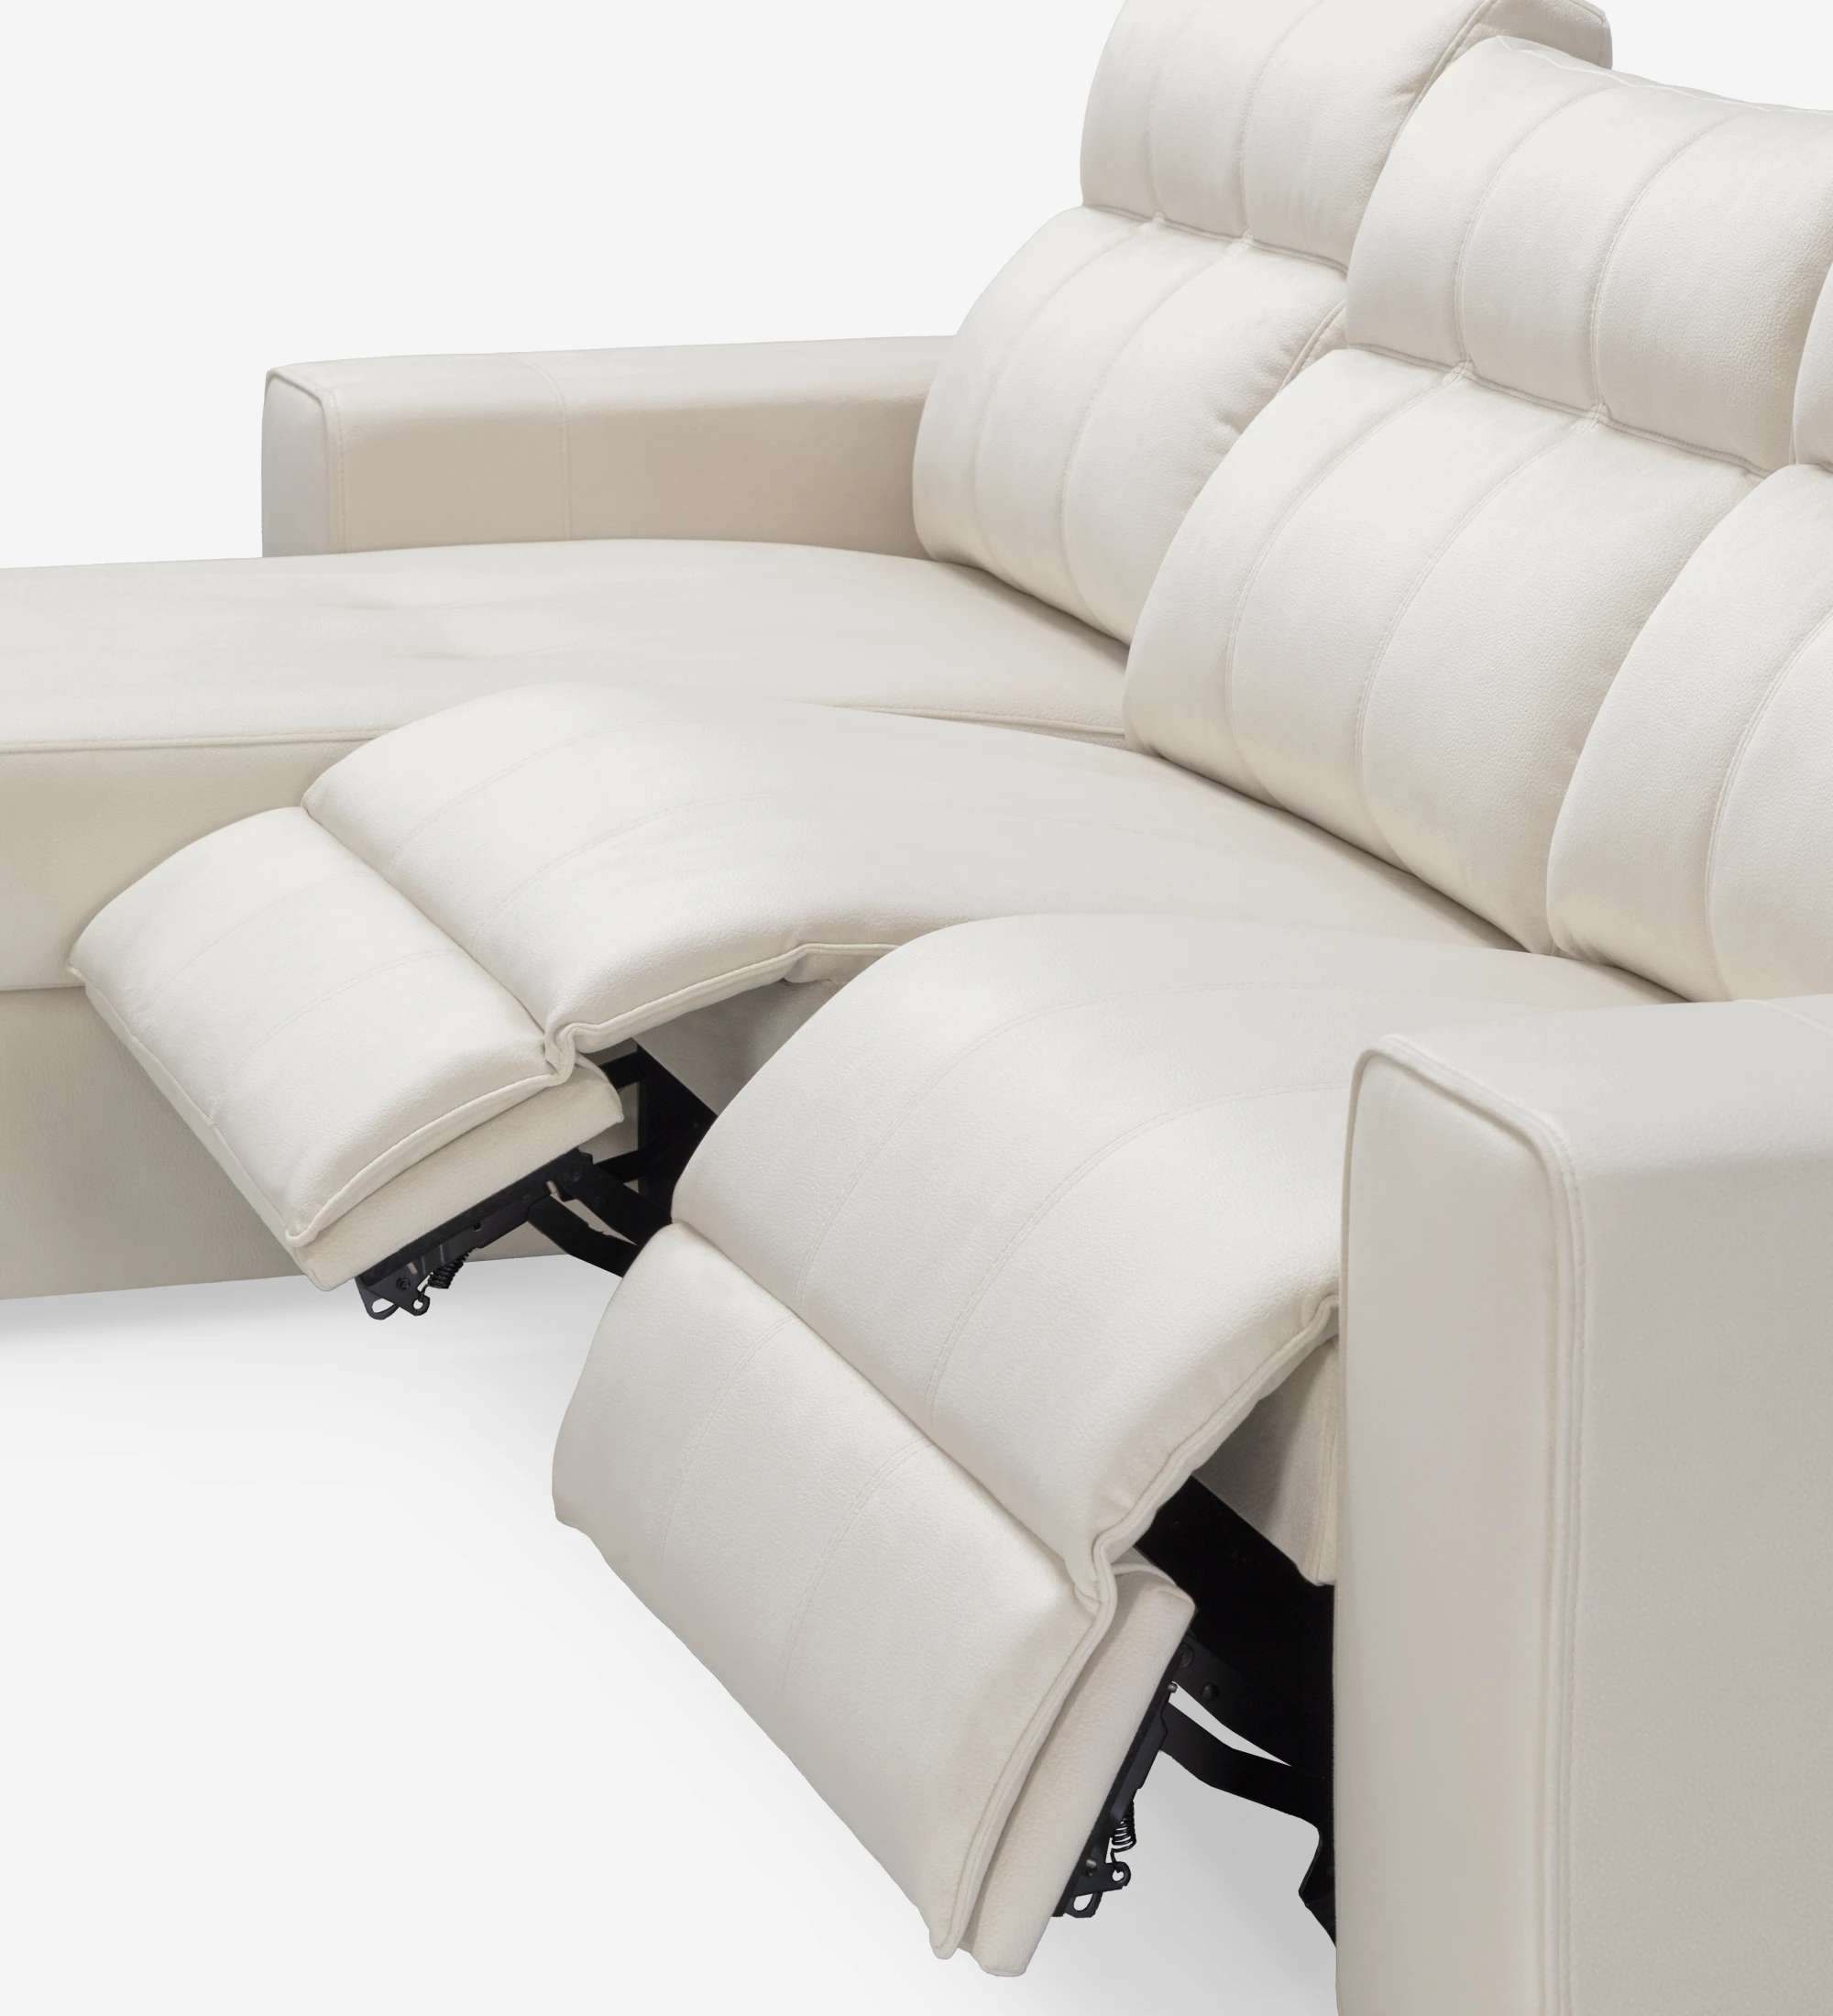 Canapé Nice 2 places et chaise longue droite, recouverts en tissu beige, système relax, rangement sur la chaise longue, 287 cm.